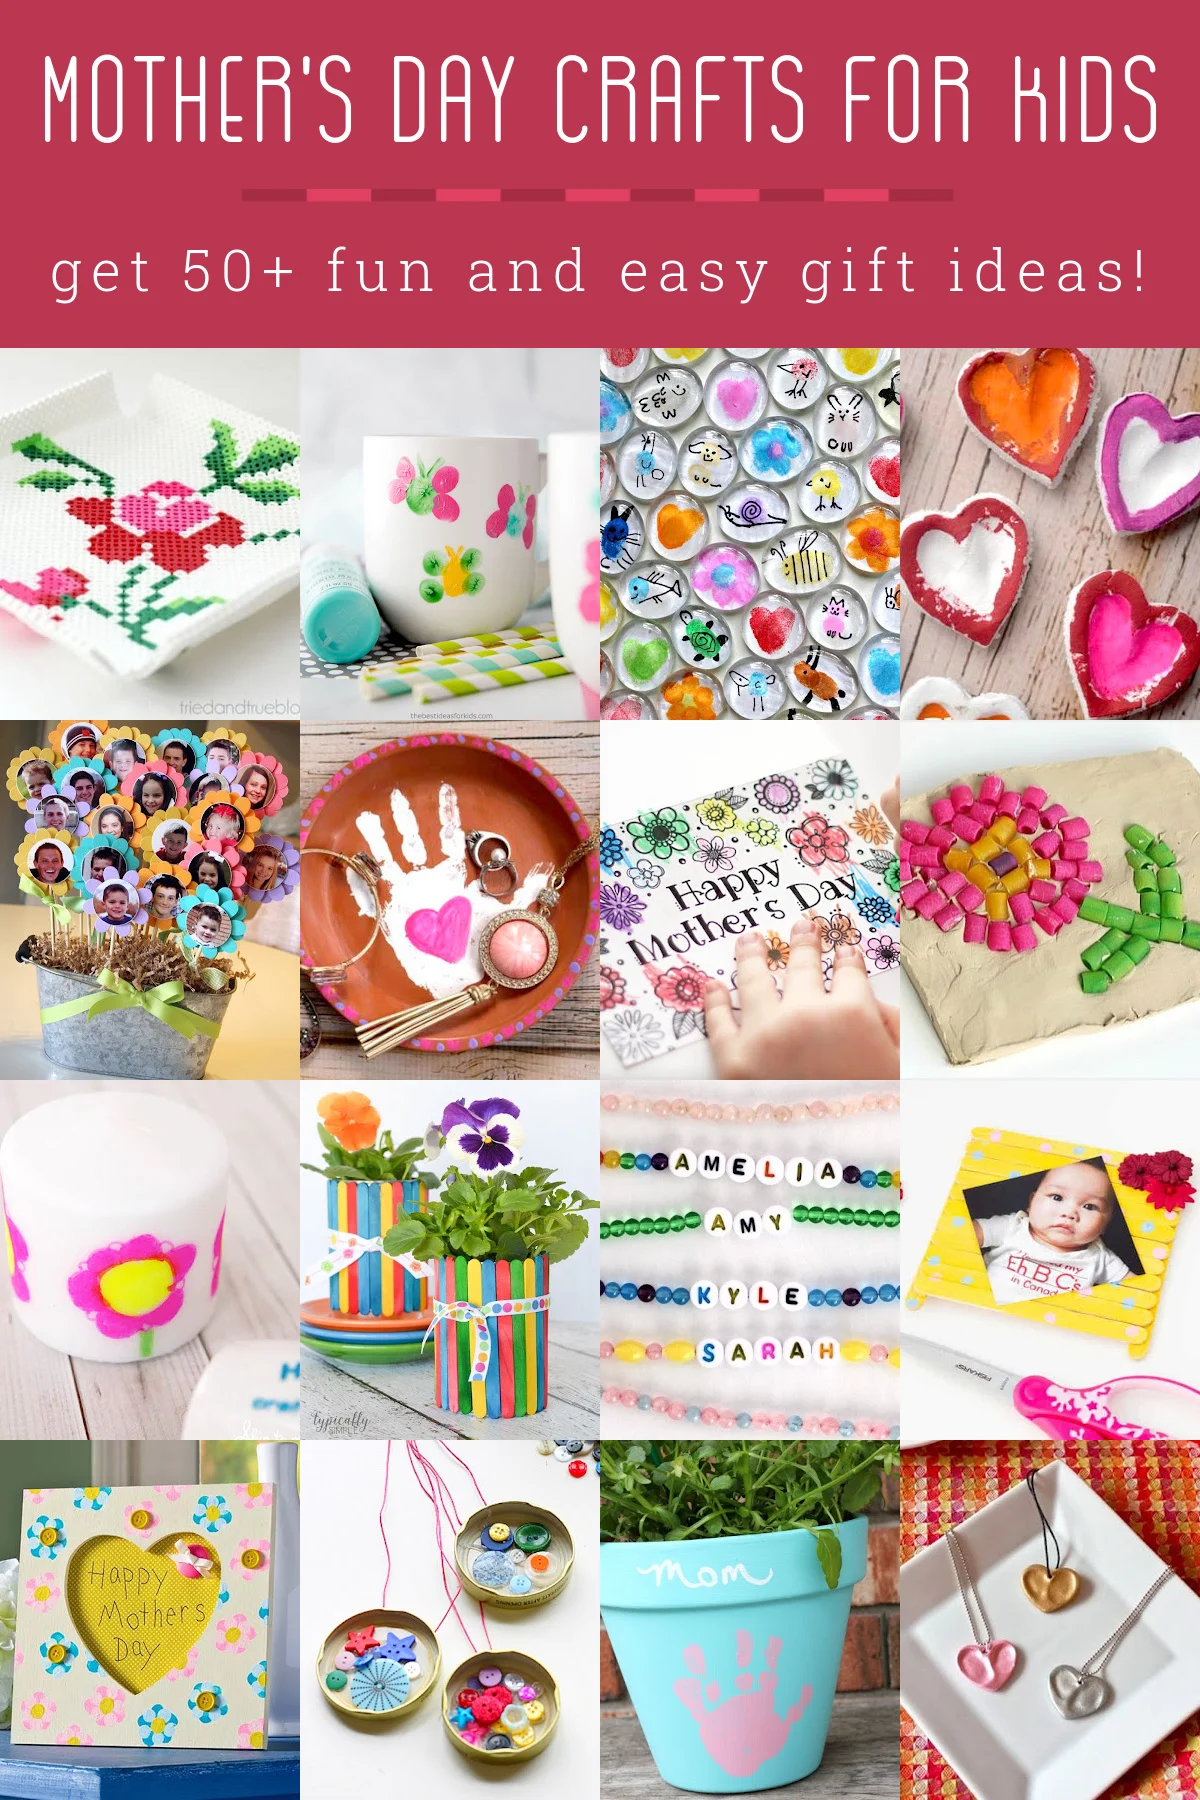 https://diycandy.b-cdn.net/wp-content/uploads/2022/04/Mothers-Day-Crafts-for-Kids.jpg.webp